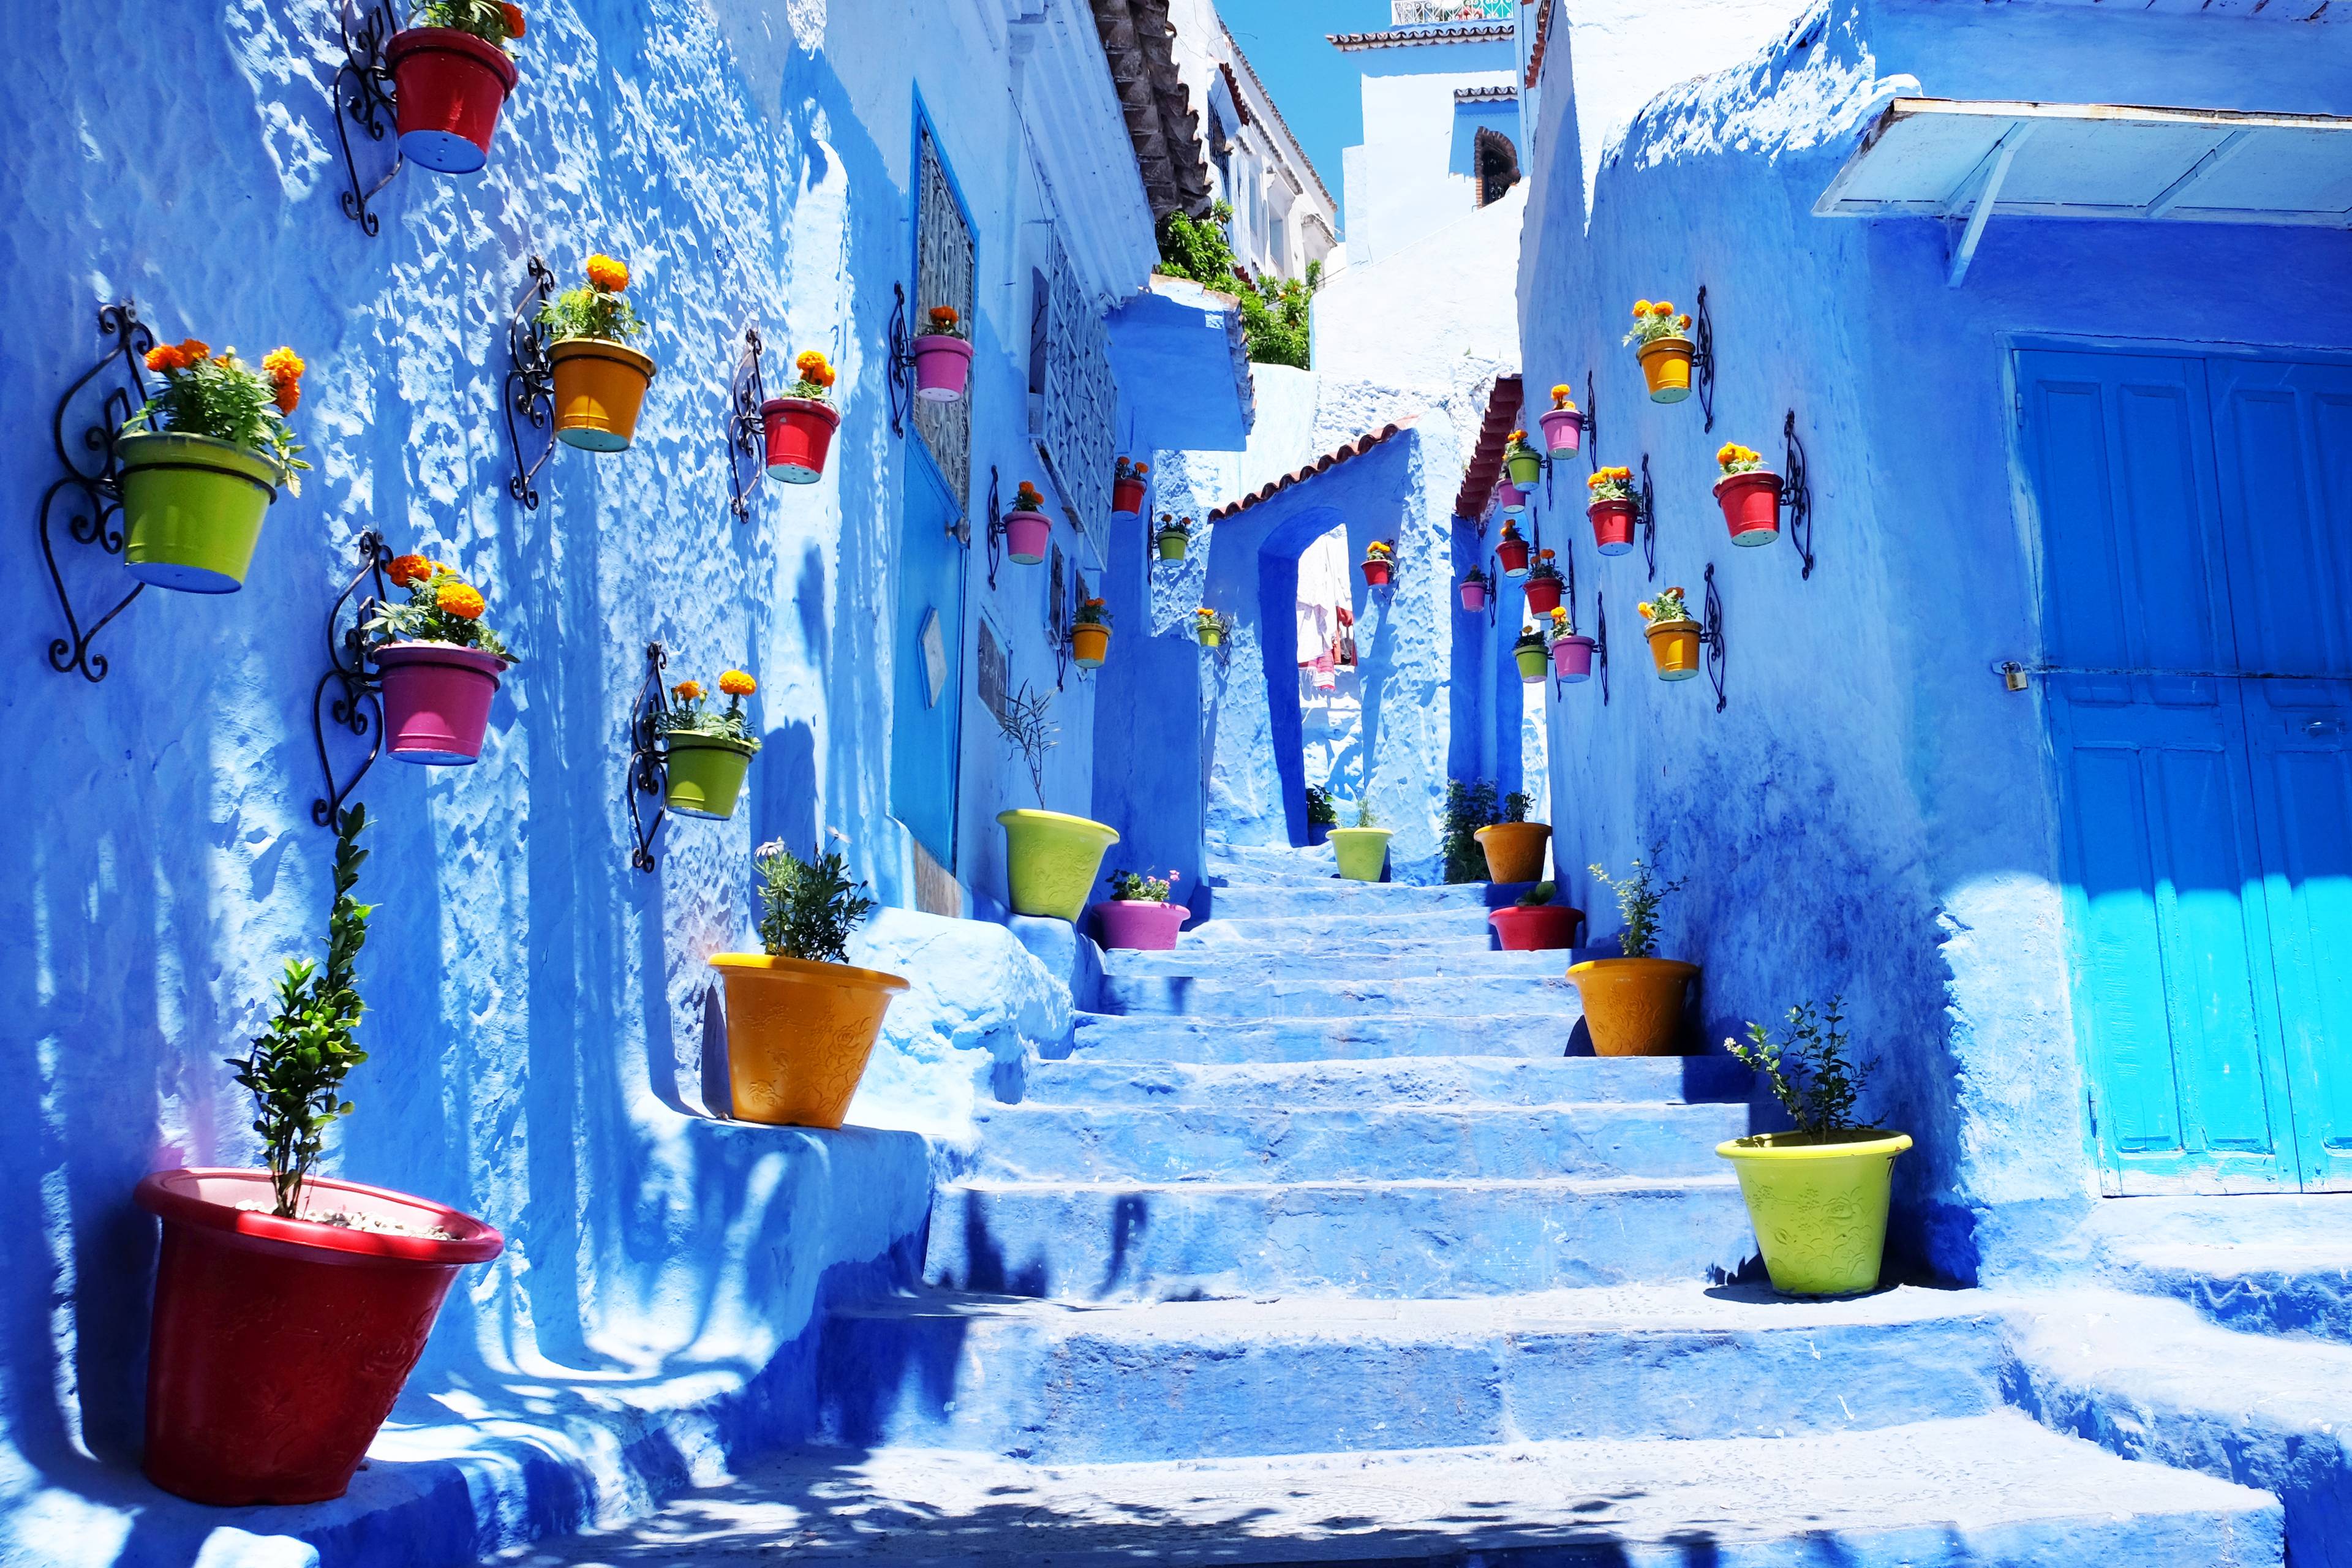 Marocco, colori e spezie cover